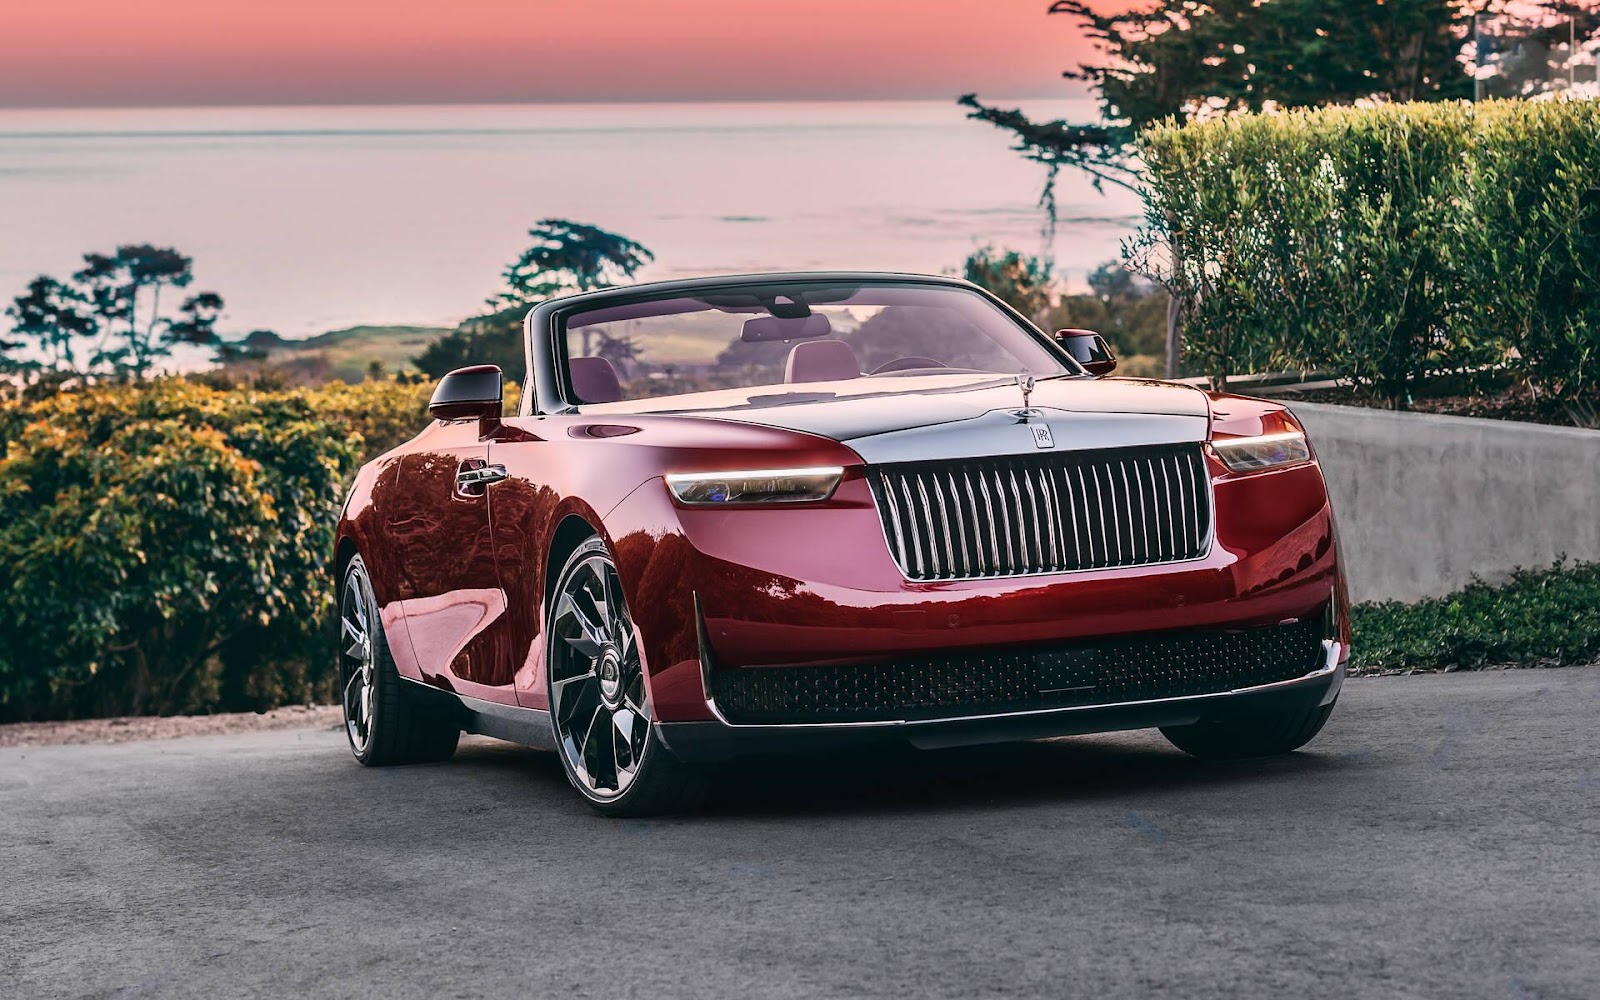 Siêu xe Rolls-Royce đắt nhất thế giới: trị giá tới 32 triệu USD, thiết kế độc nhất vô nhị lấy cảm hứng từ hoa hồng, chủ nhân là nhân vật tầm cỡ, nhưng giấu mặt - Ảnh 2.